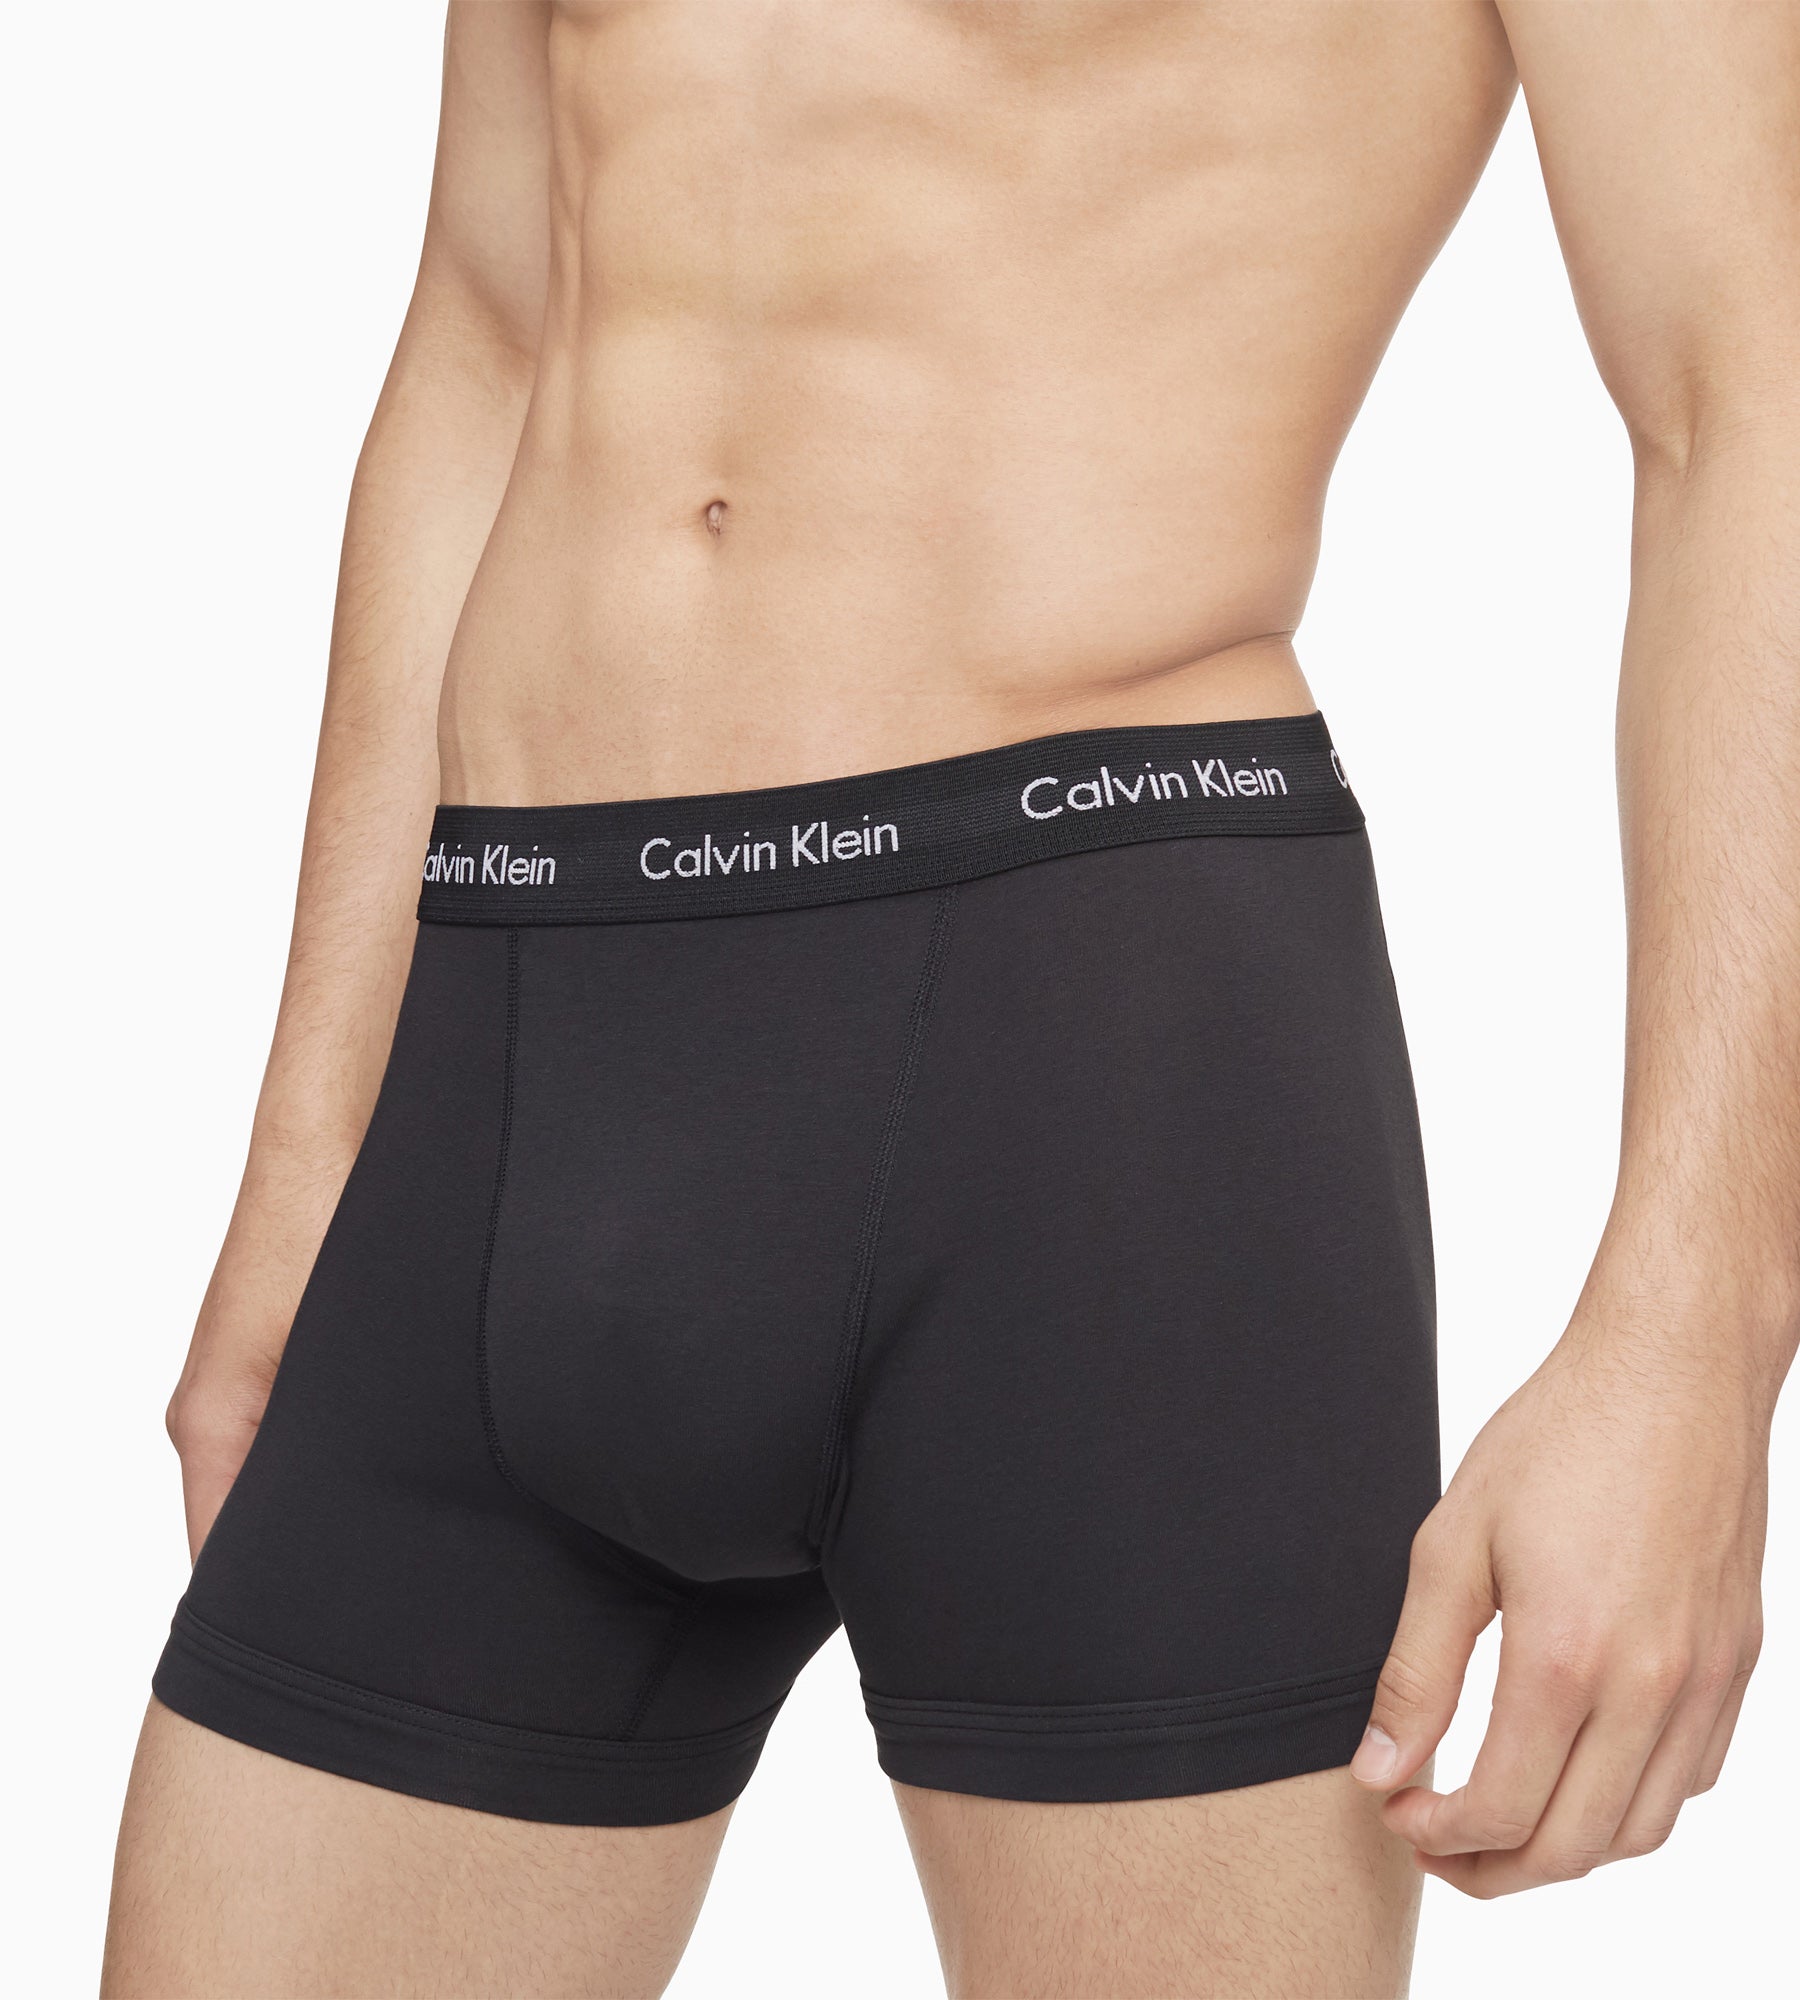 Fashion Men's Premium Boxer Briefs Underwears/Shorts/Boxers 3 In 1 Pack